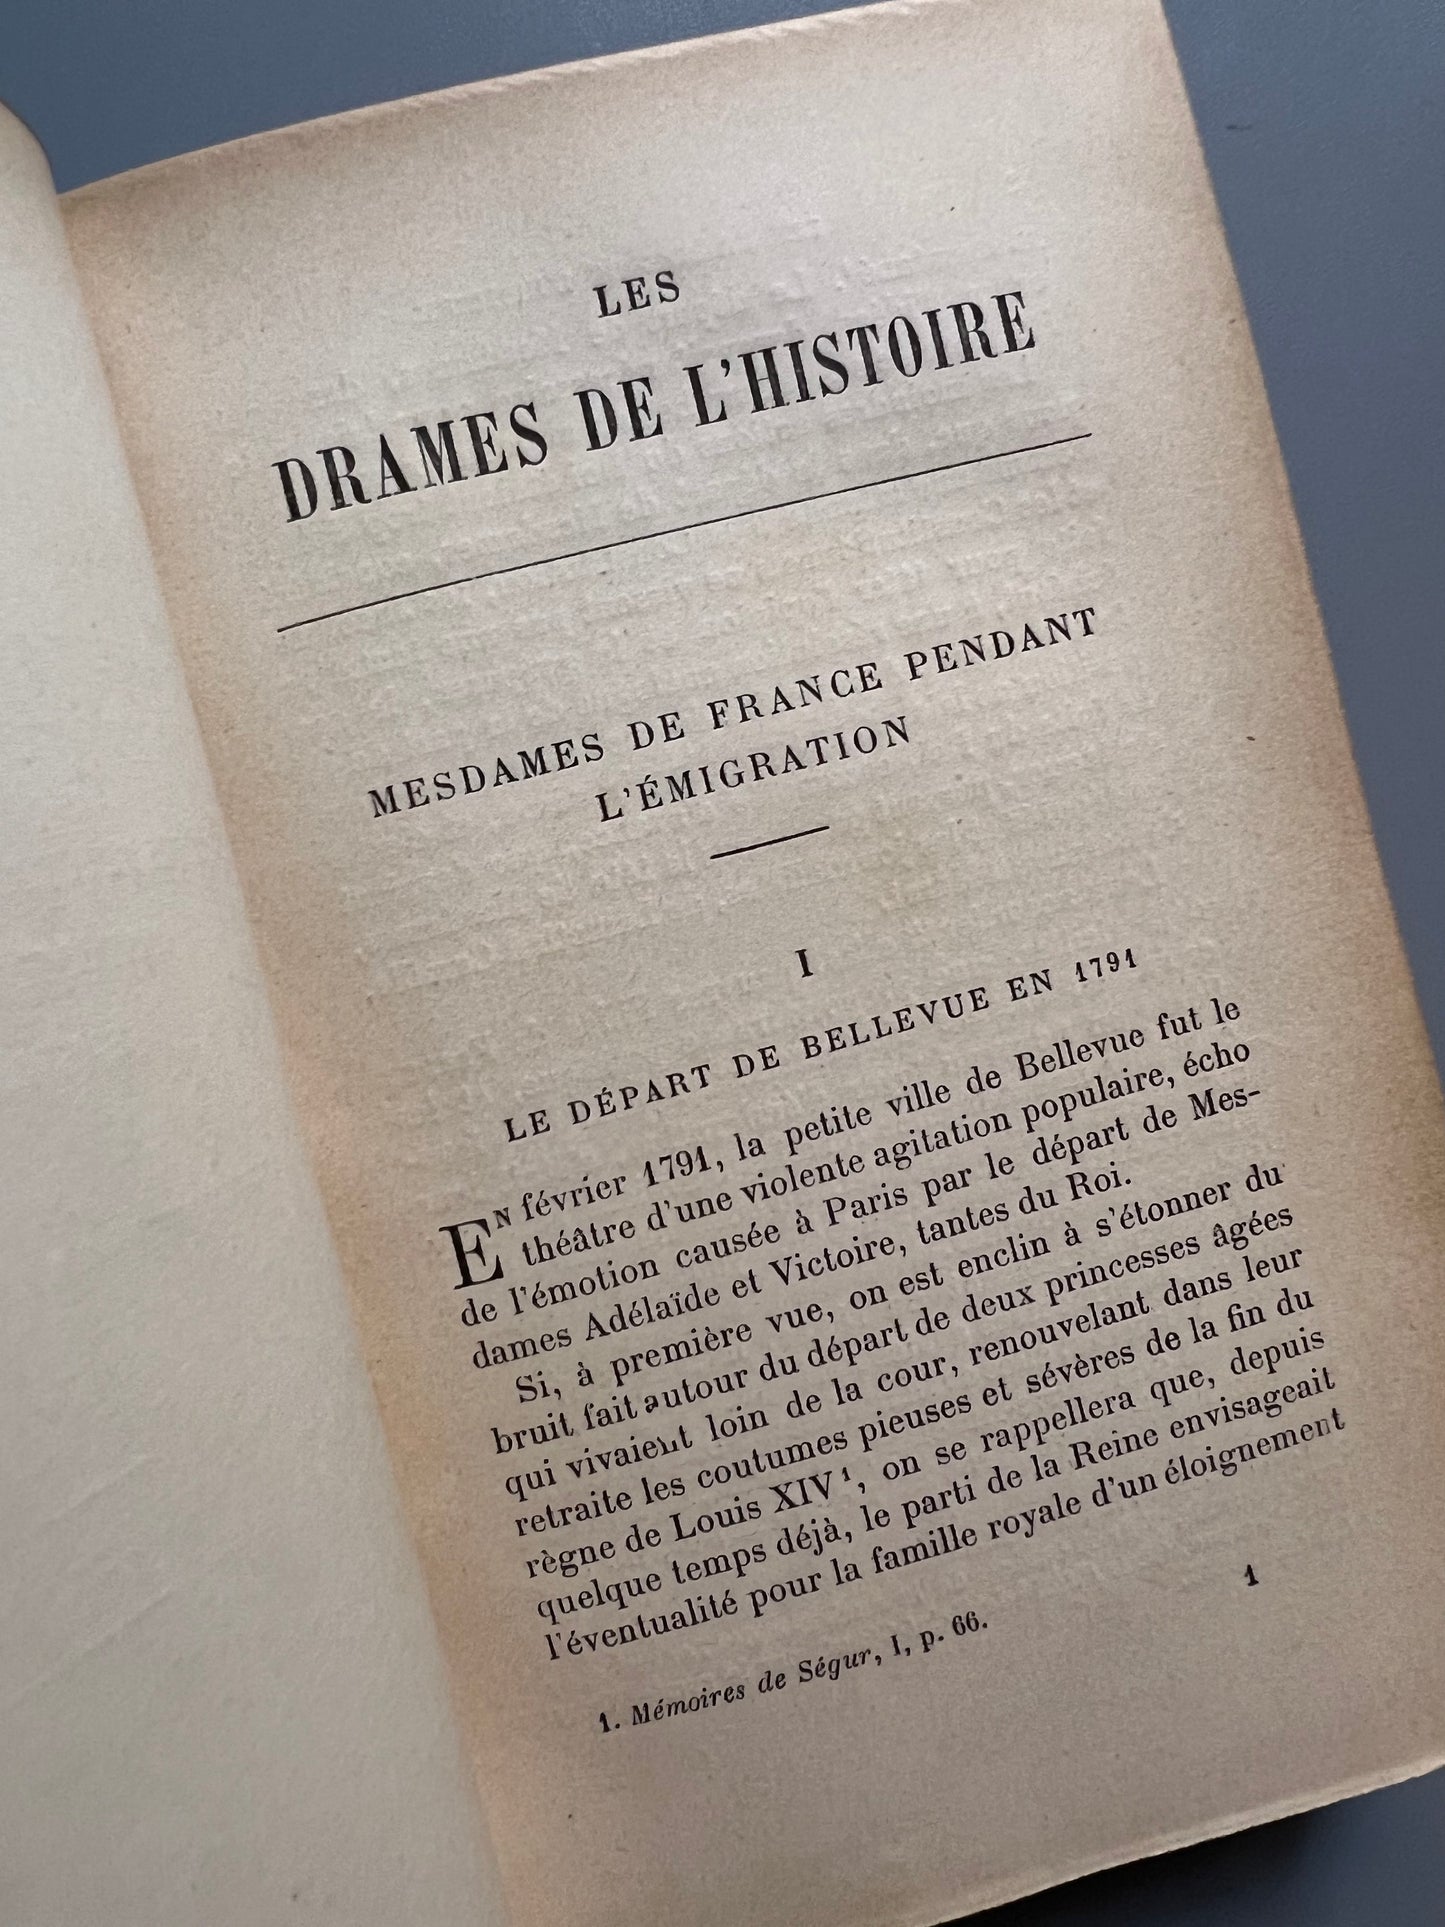 Les drames de l'histoire, Comte Fleury - Libraire Hachette et Cie, 1905